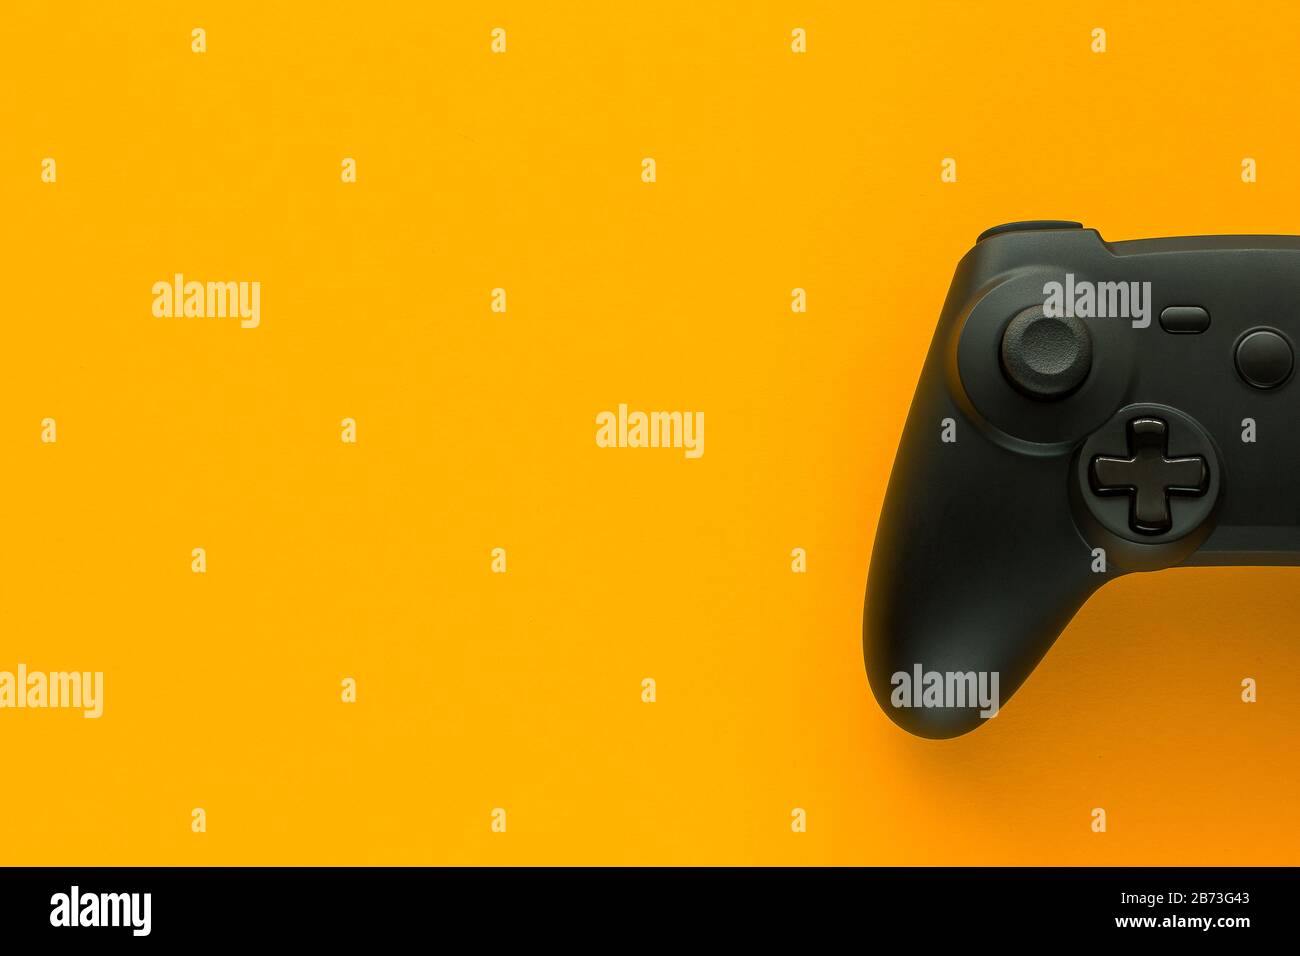 Stock-Foto eines schwarzen Gamepads auf gelbem Hintergrund und Kopierbereich auf der linken Seite Stockfoto